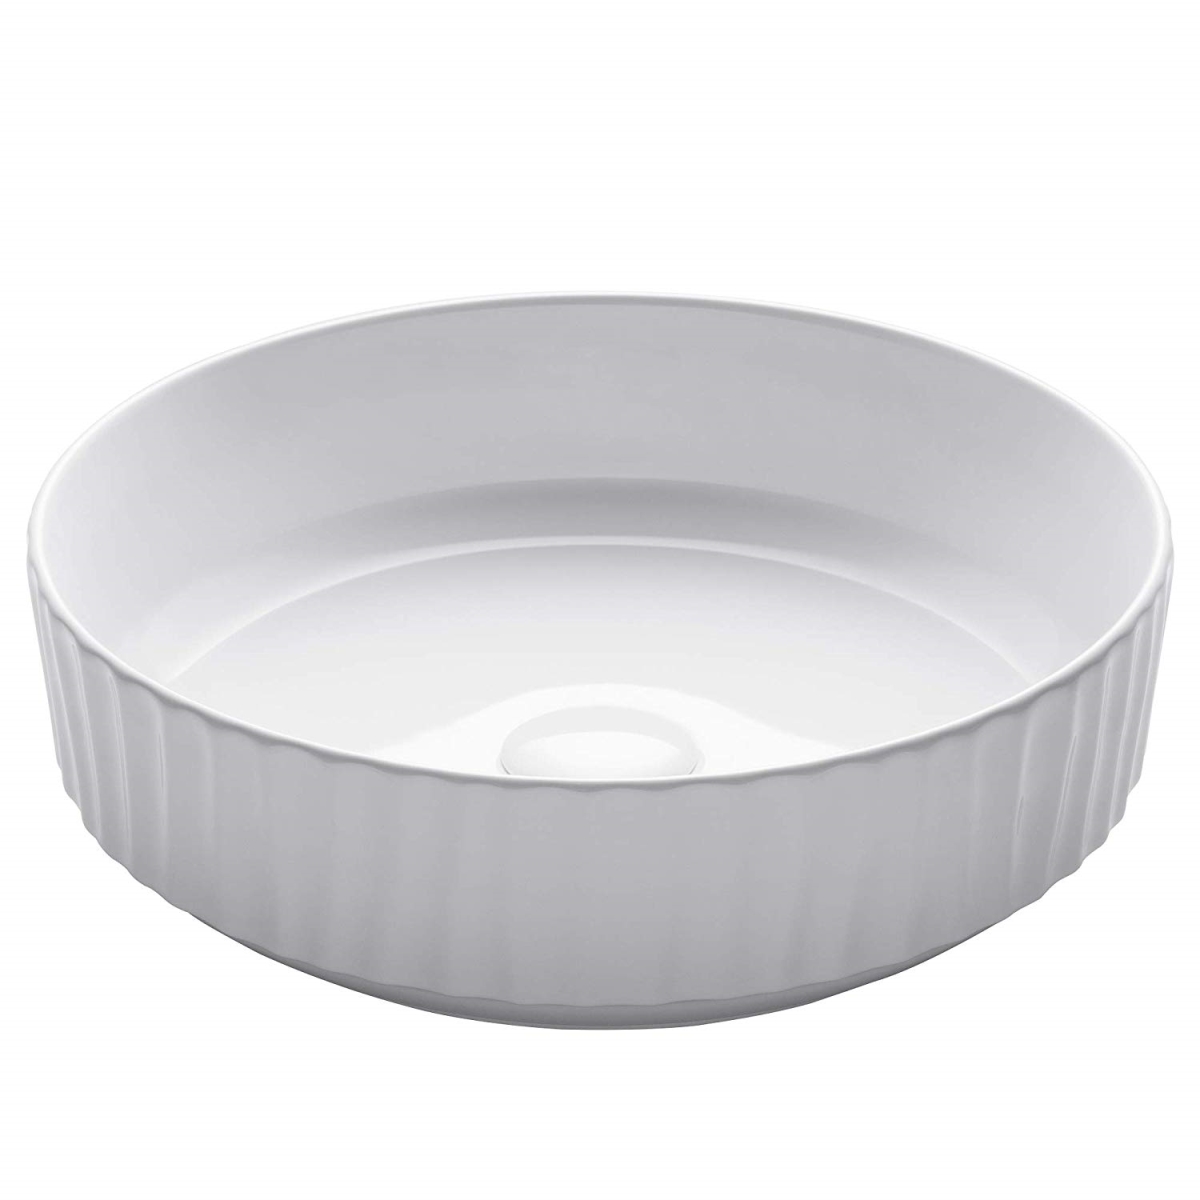 Kraus Kcv-201gwh 15.75 X 4.75 In. Round Porcelain Ceramic Vessel Bathroom Sink, White